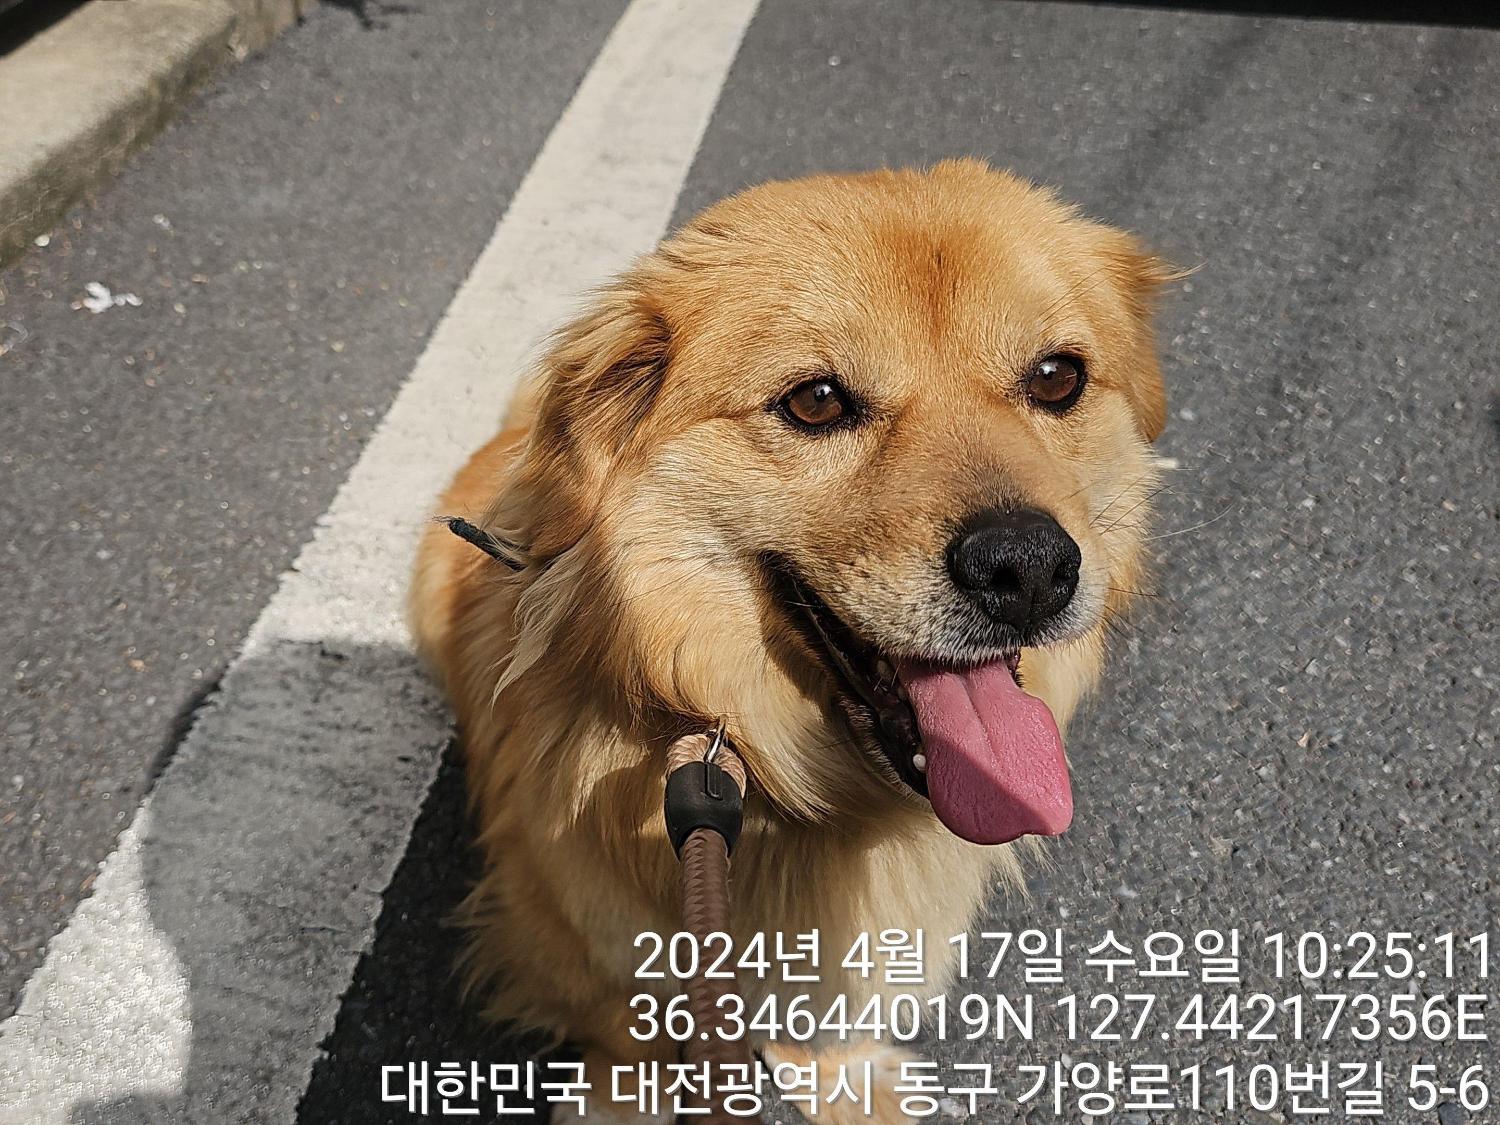 공고 번호가 대전-동구-2024-00097인 믹스견 동물 사진